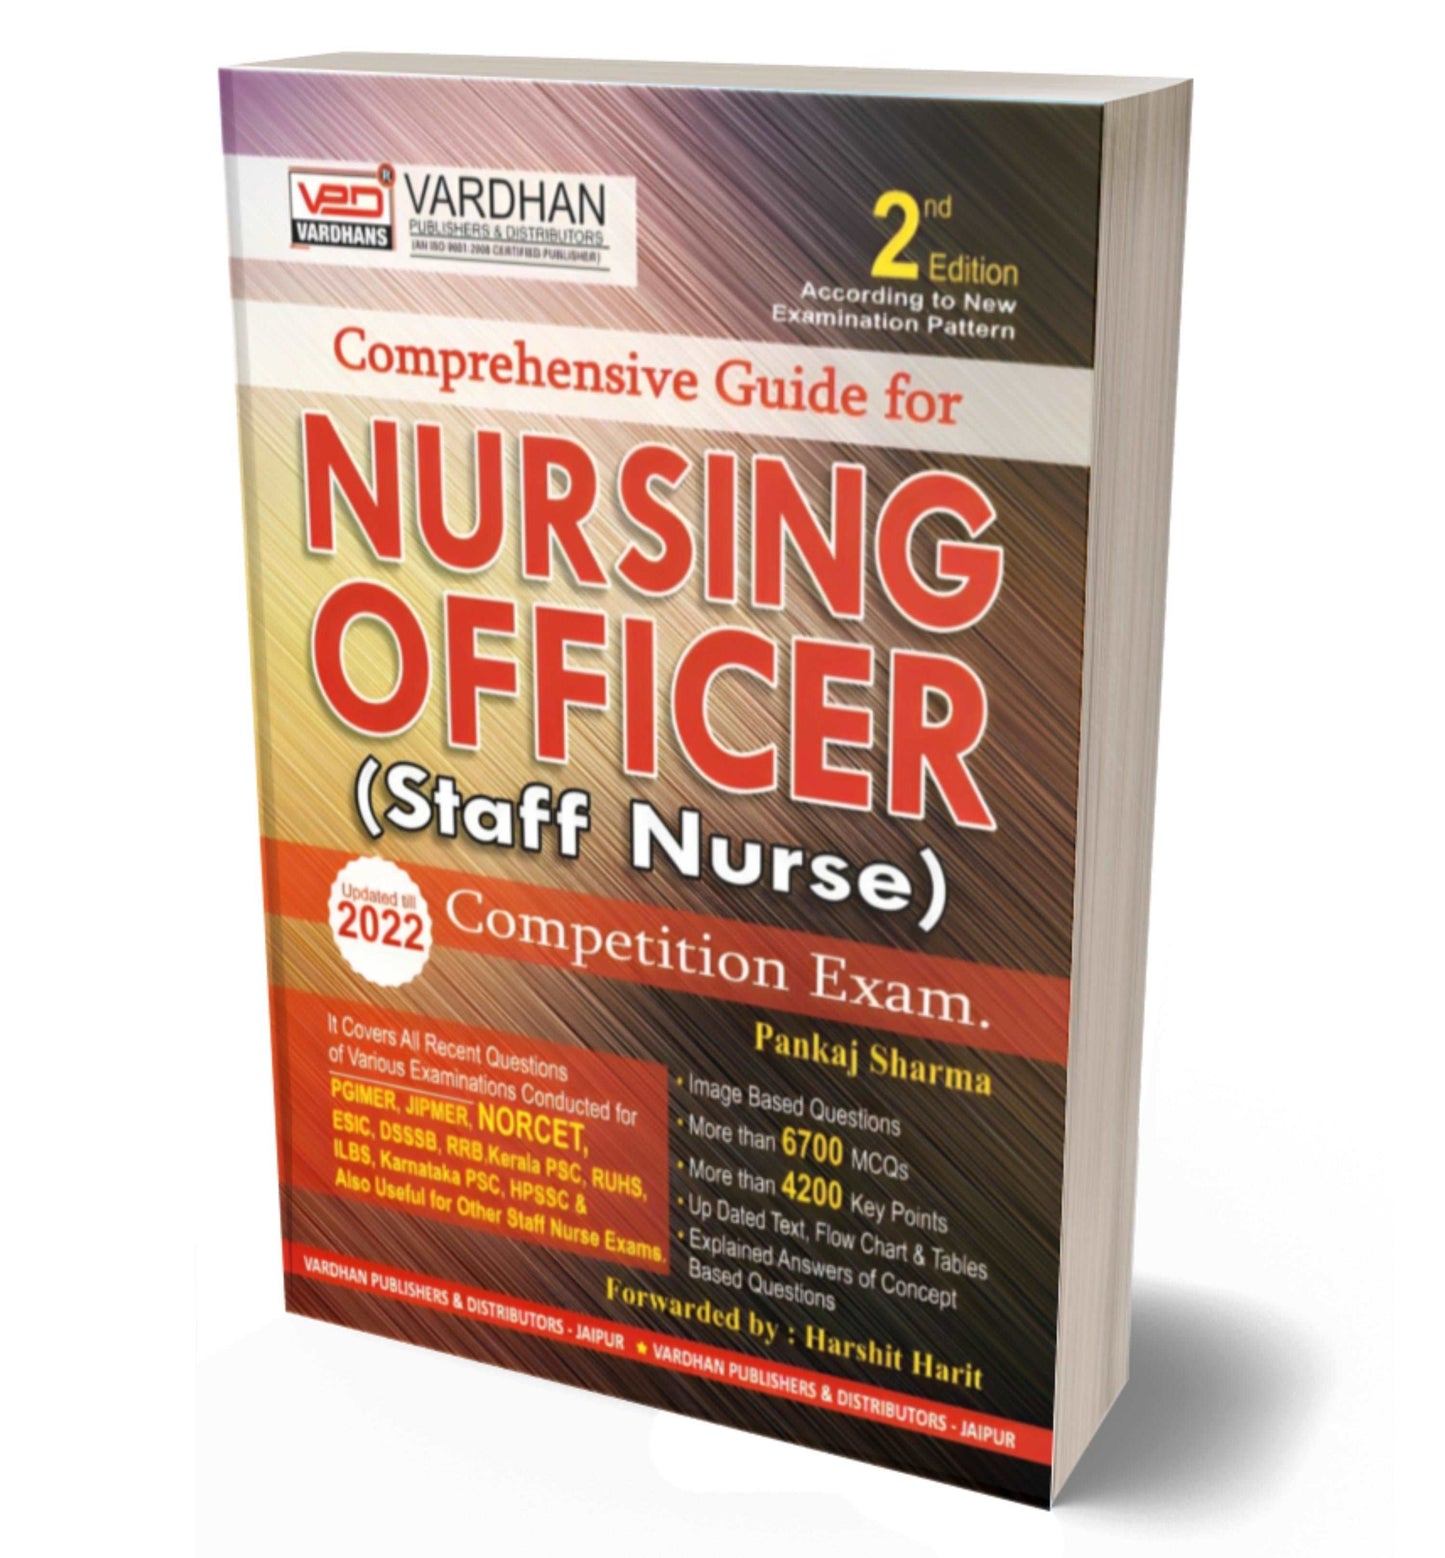 Comprehensive Guide for Nursing Officer (Staff Nurse)